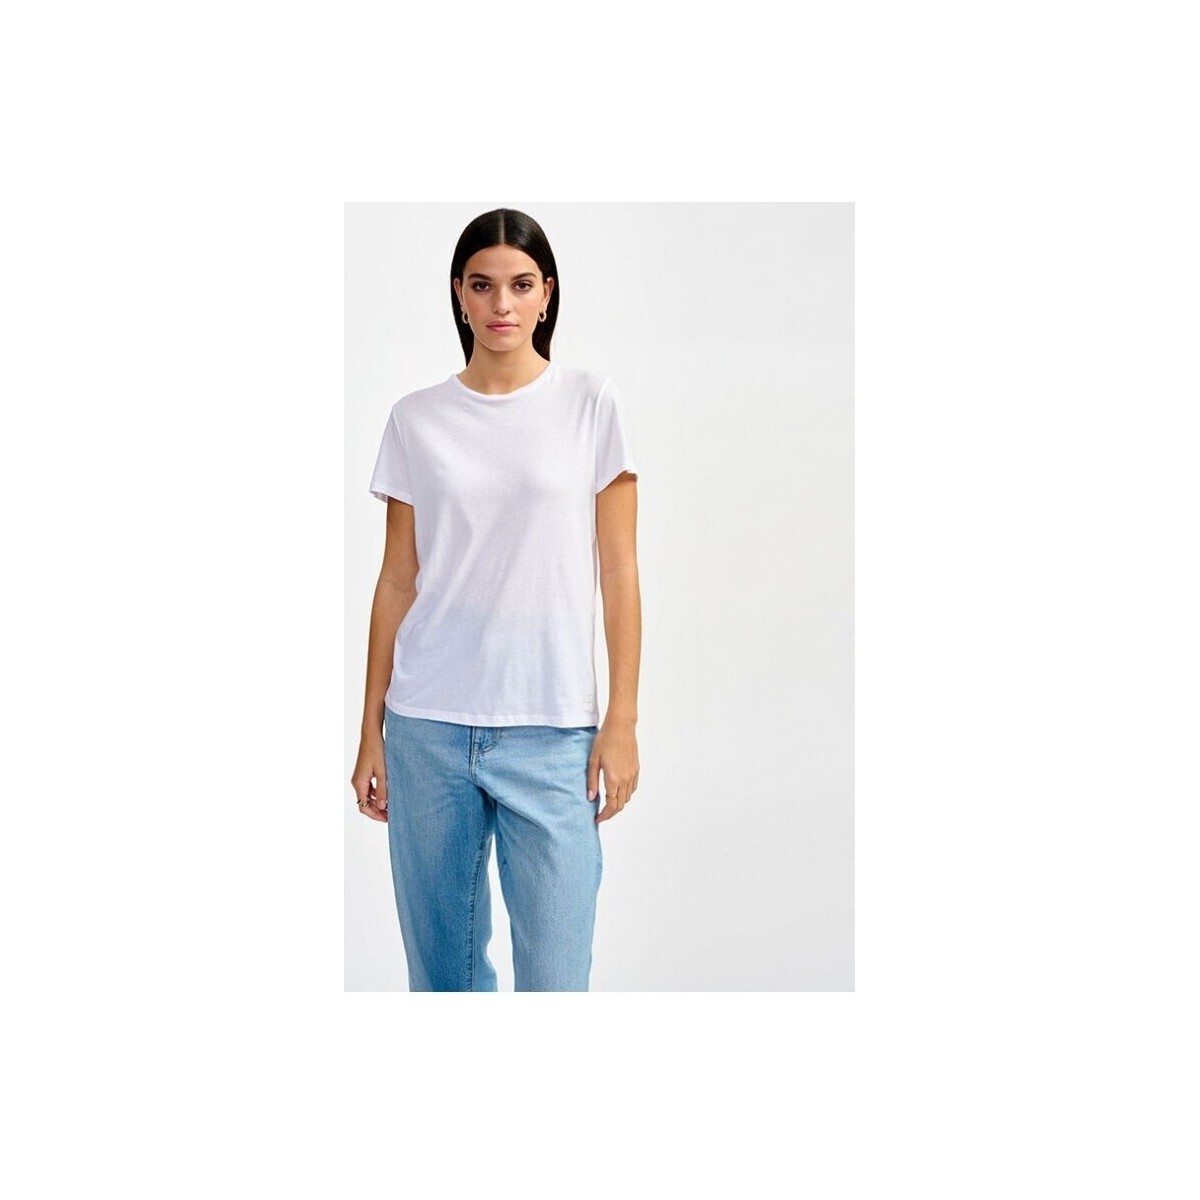 Vêtements Femme T-shirts manches courtes Bellerose Covi Tee White Multicolore